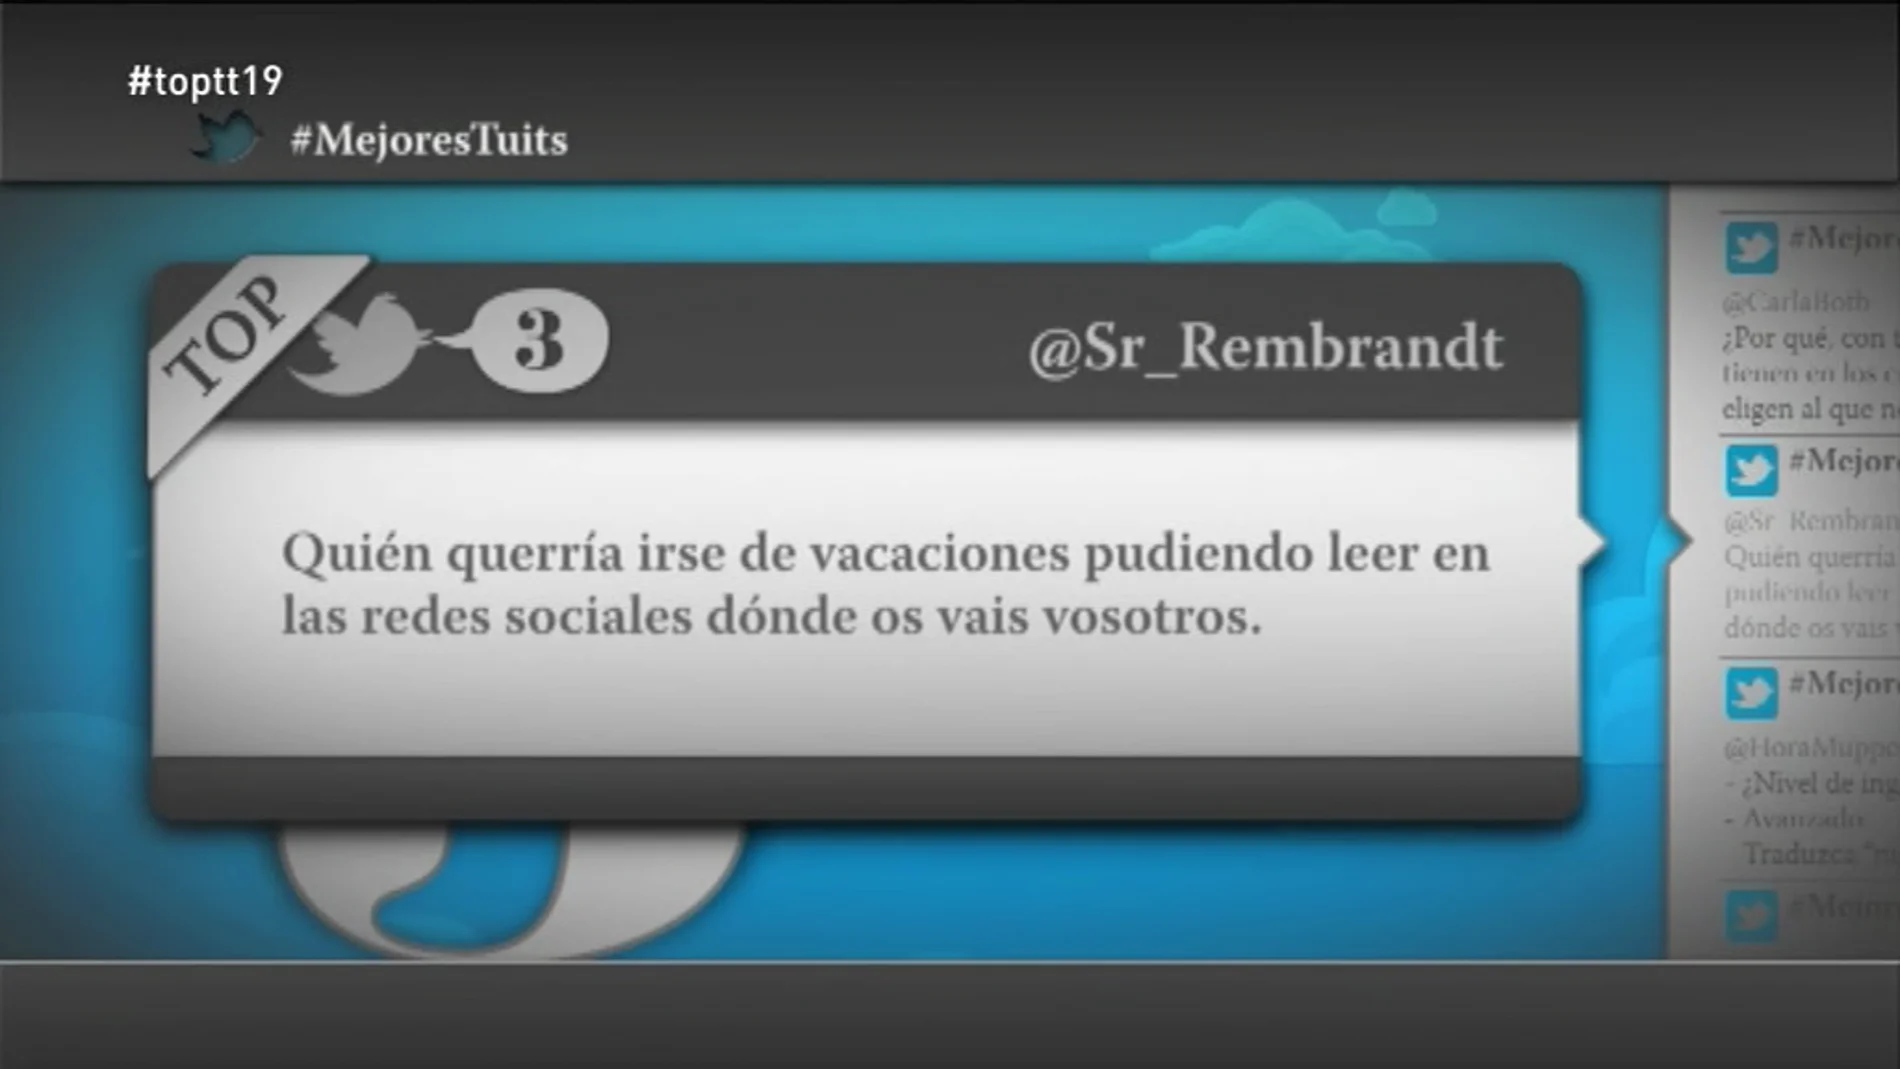 @Sr_Rembrandt: "Quién querría irse de vacaciones pudiendo leer en las redes sociales dónde os vais vosotros"